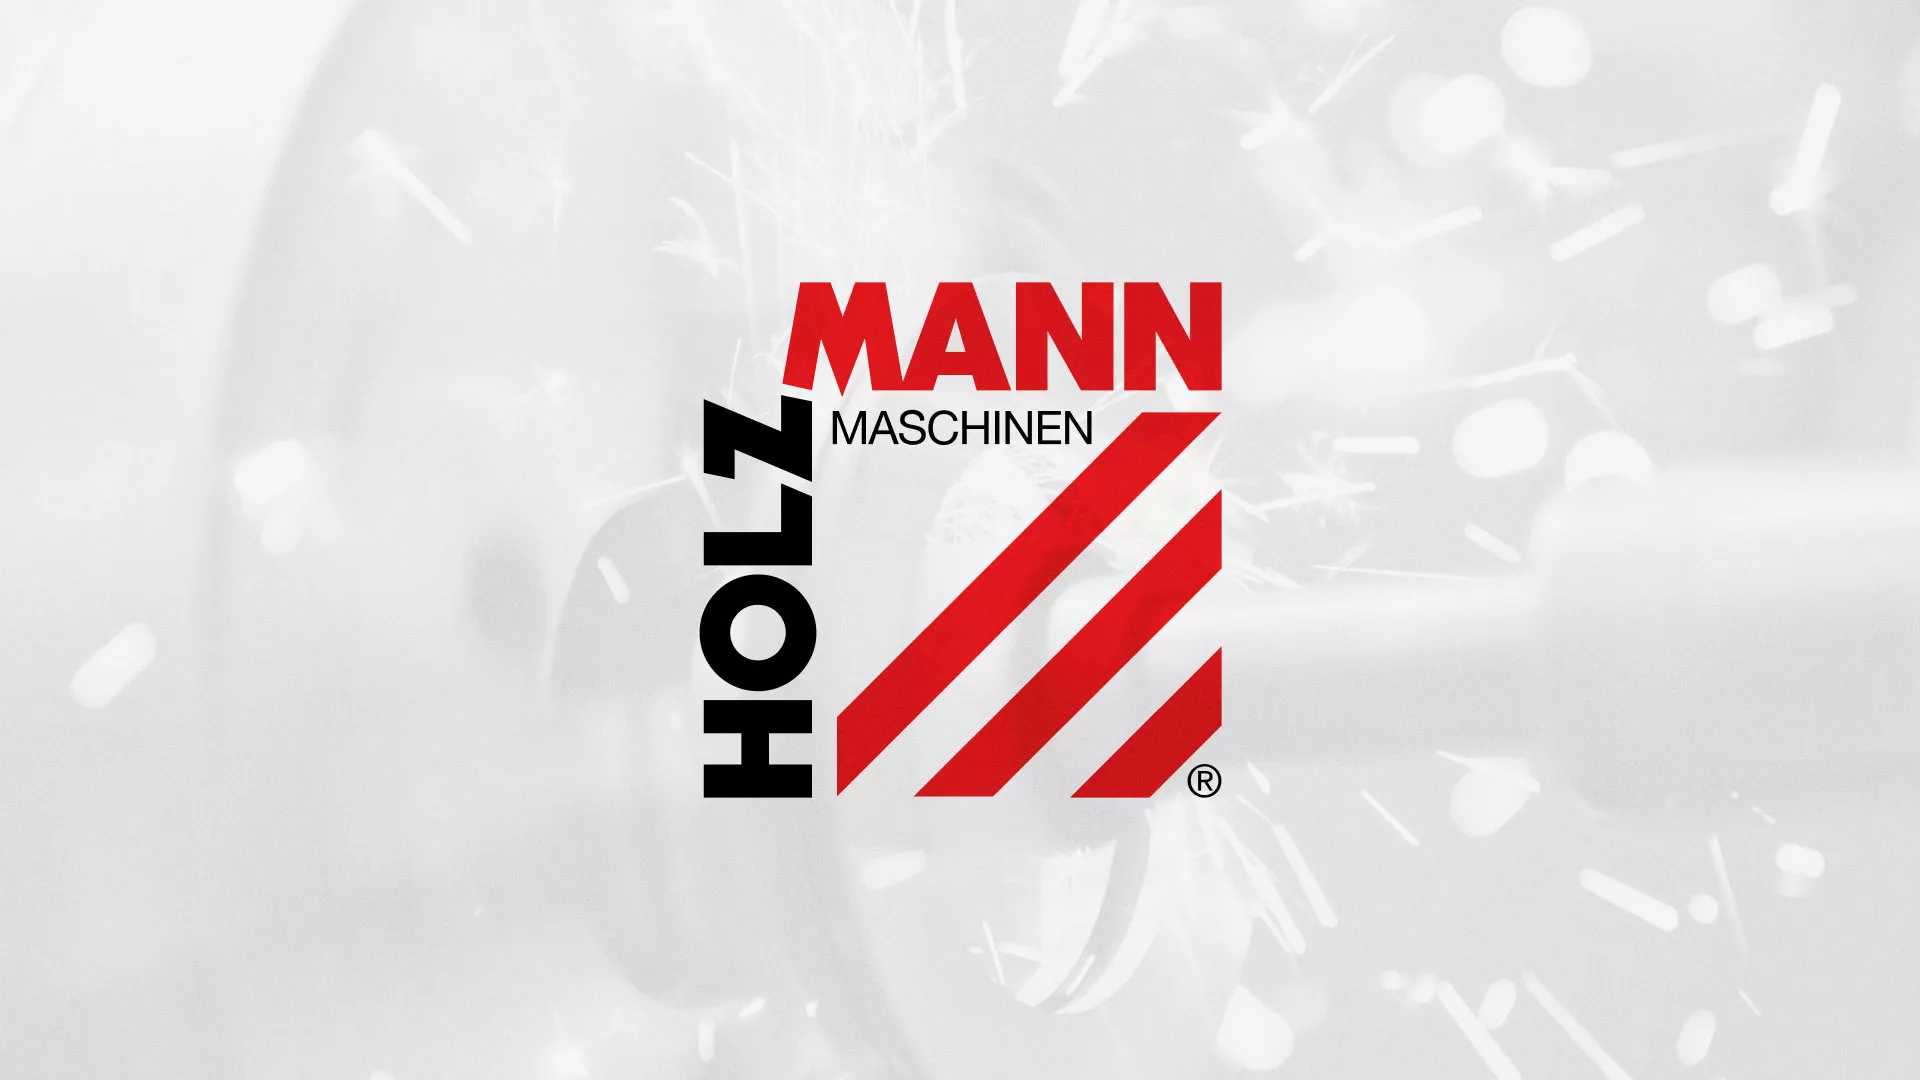 Создание сайта компании «HOLZMANN Maschinen GmbH» в Рыбном